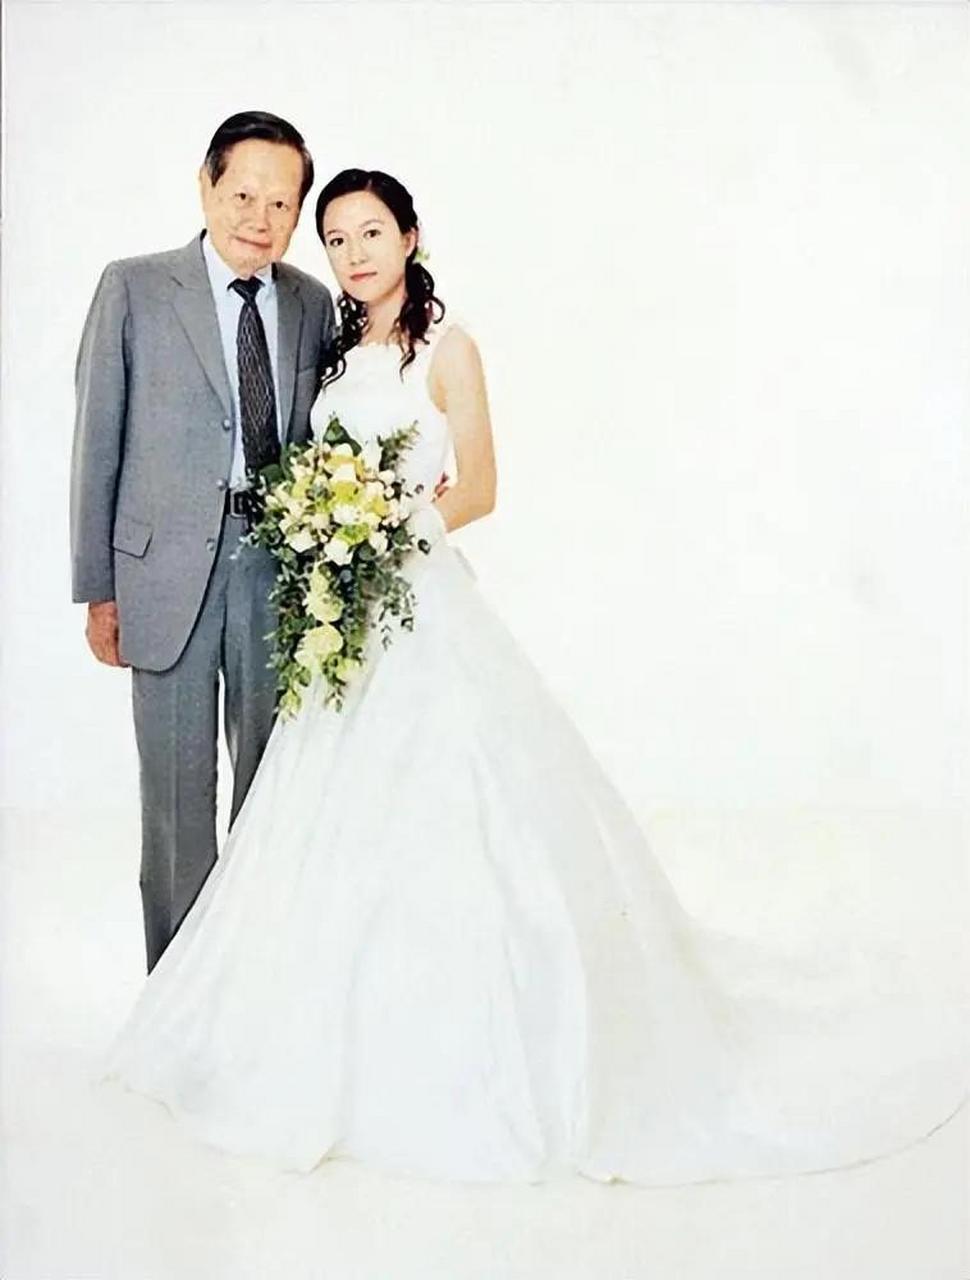 翁帆28岁嫁给82岁的杨振宁,结婚18年,杨振宁100岁了依然精神矍铄,翁帆